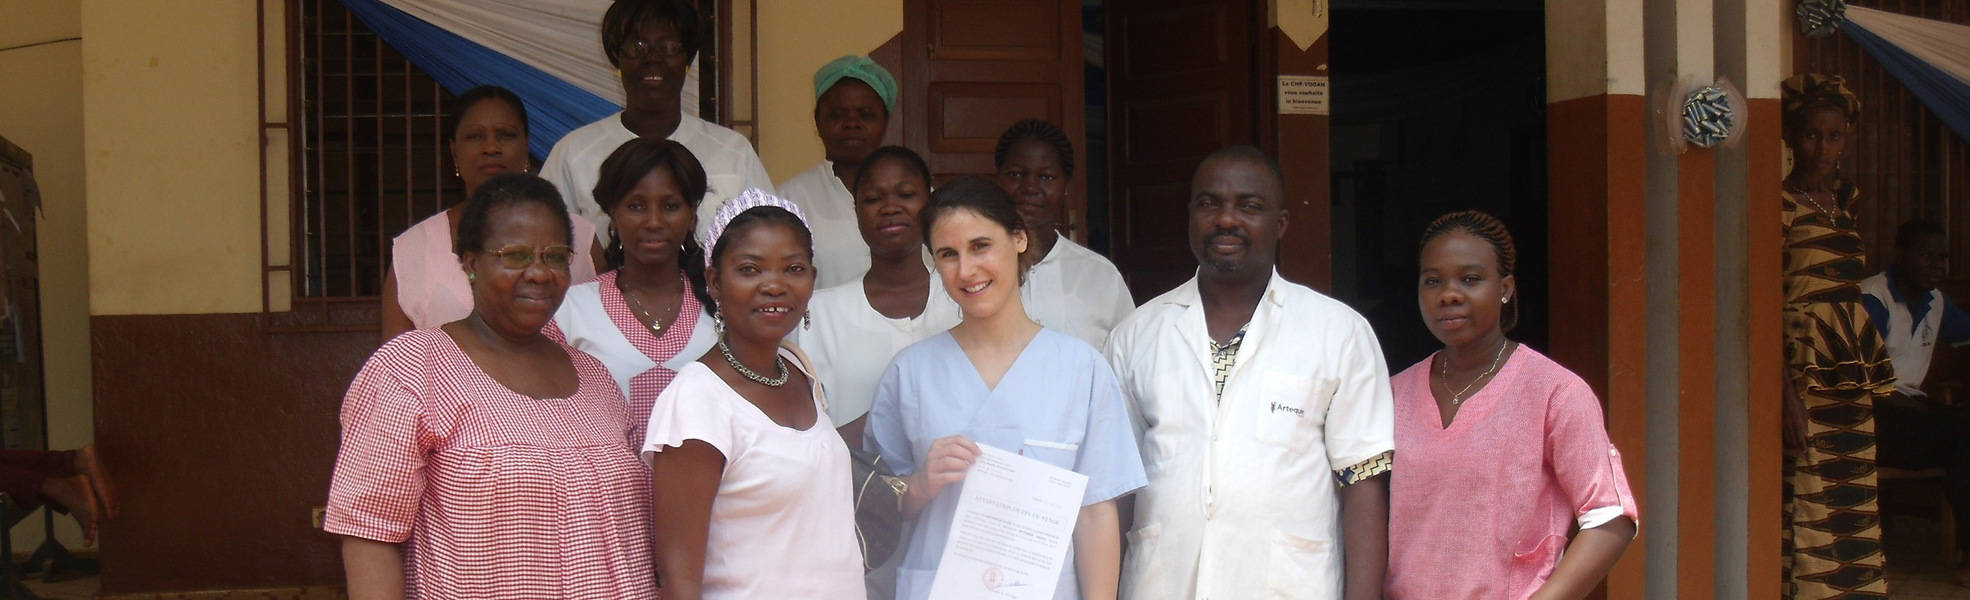 Freiwilligenarbeit im Bereich Medizin in Ghana 